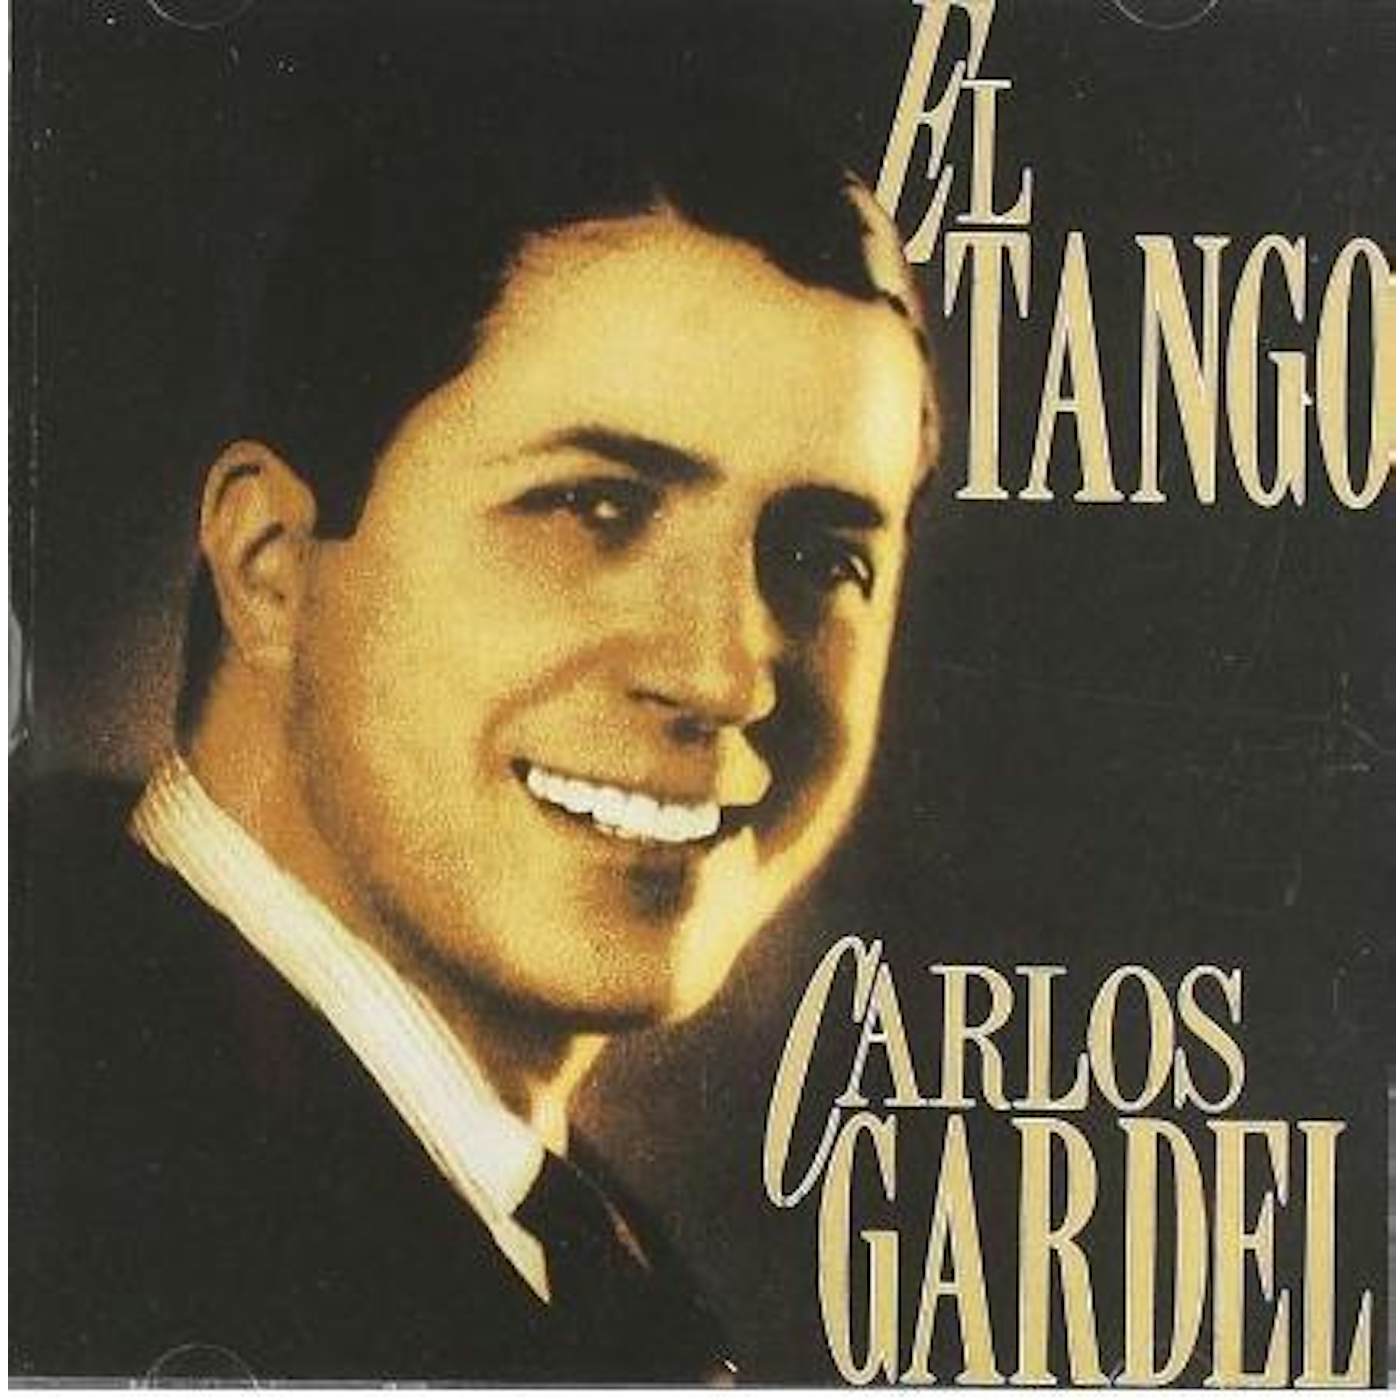 Carlos Gardel EL TANGO CD